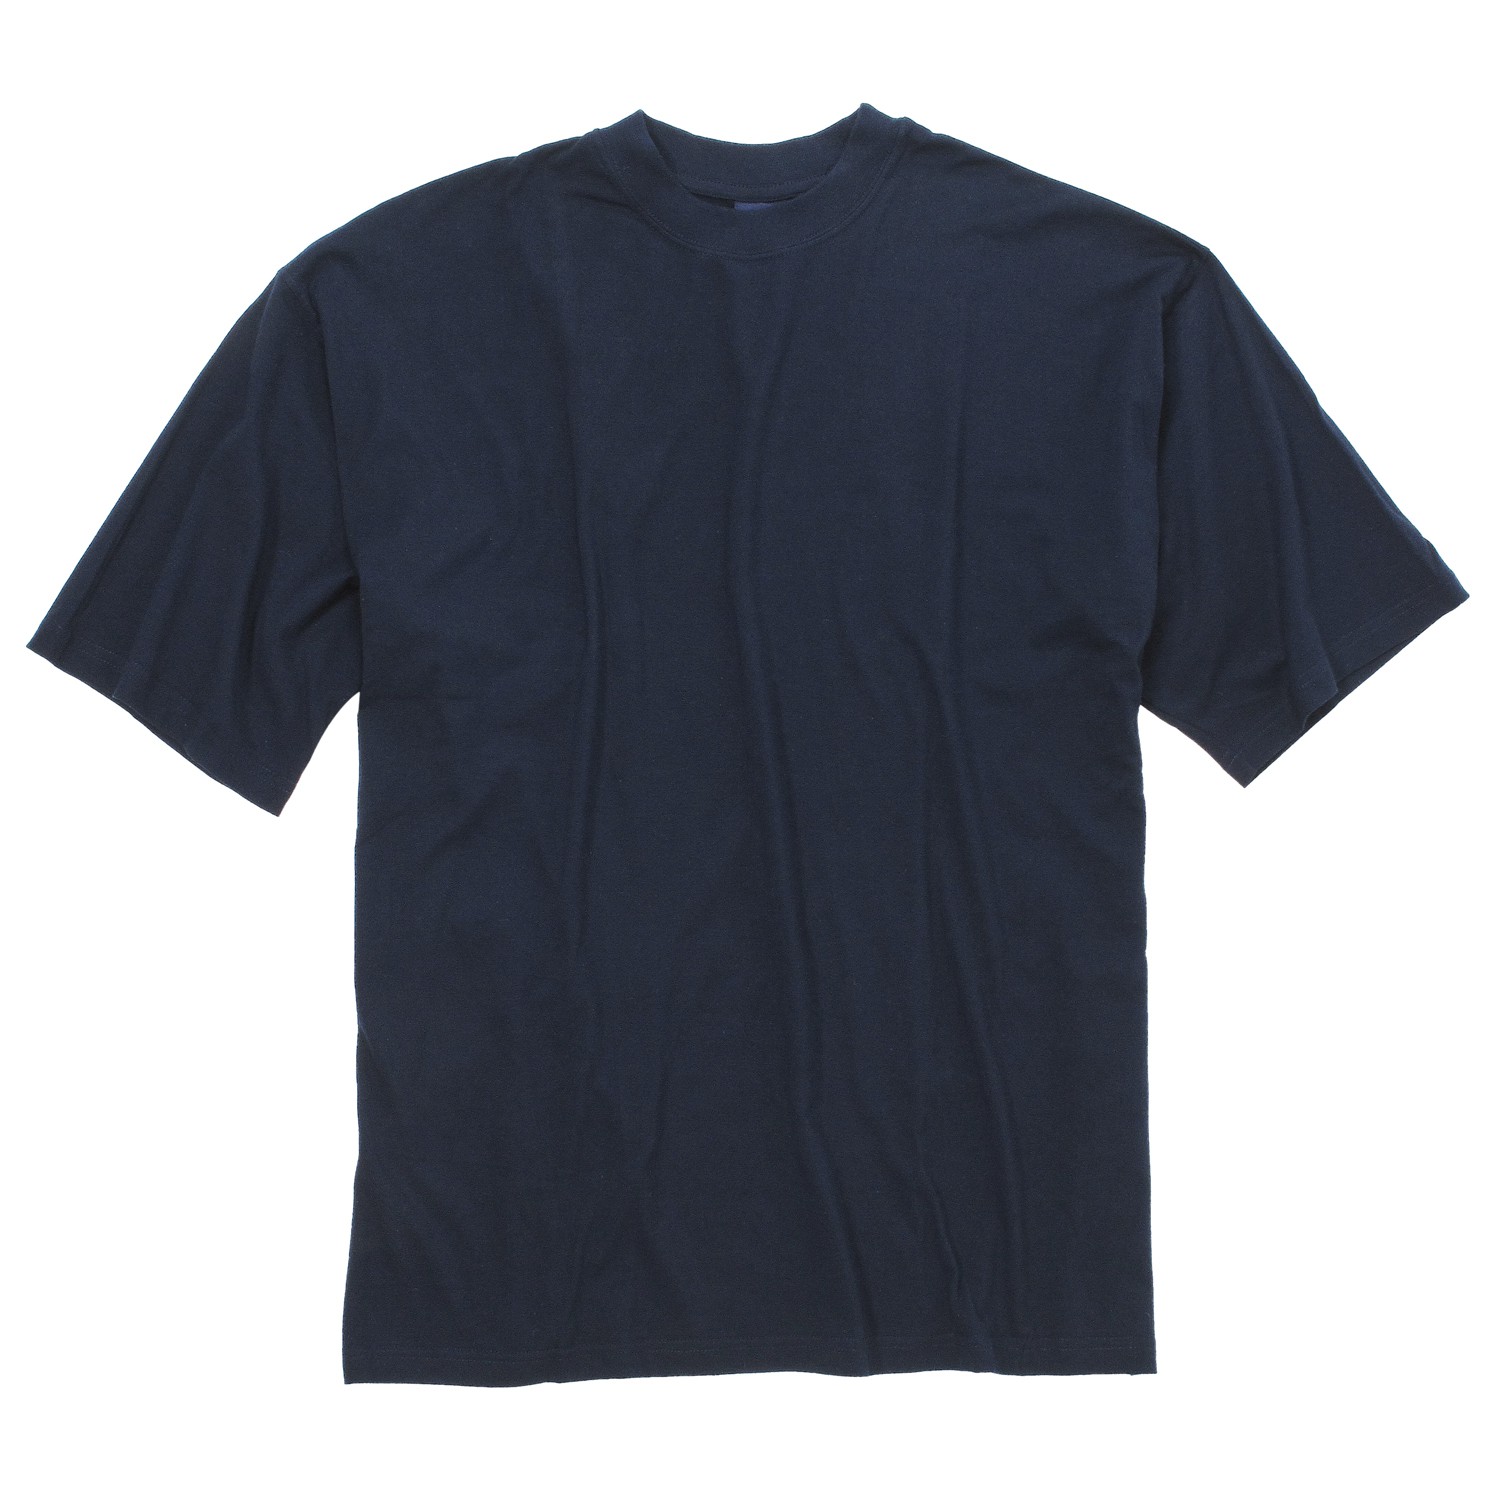 T-Shirt in der Farbe navy von Kapart // Bis 8XL